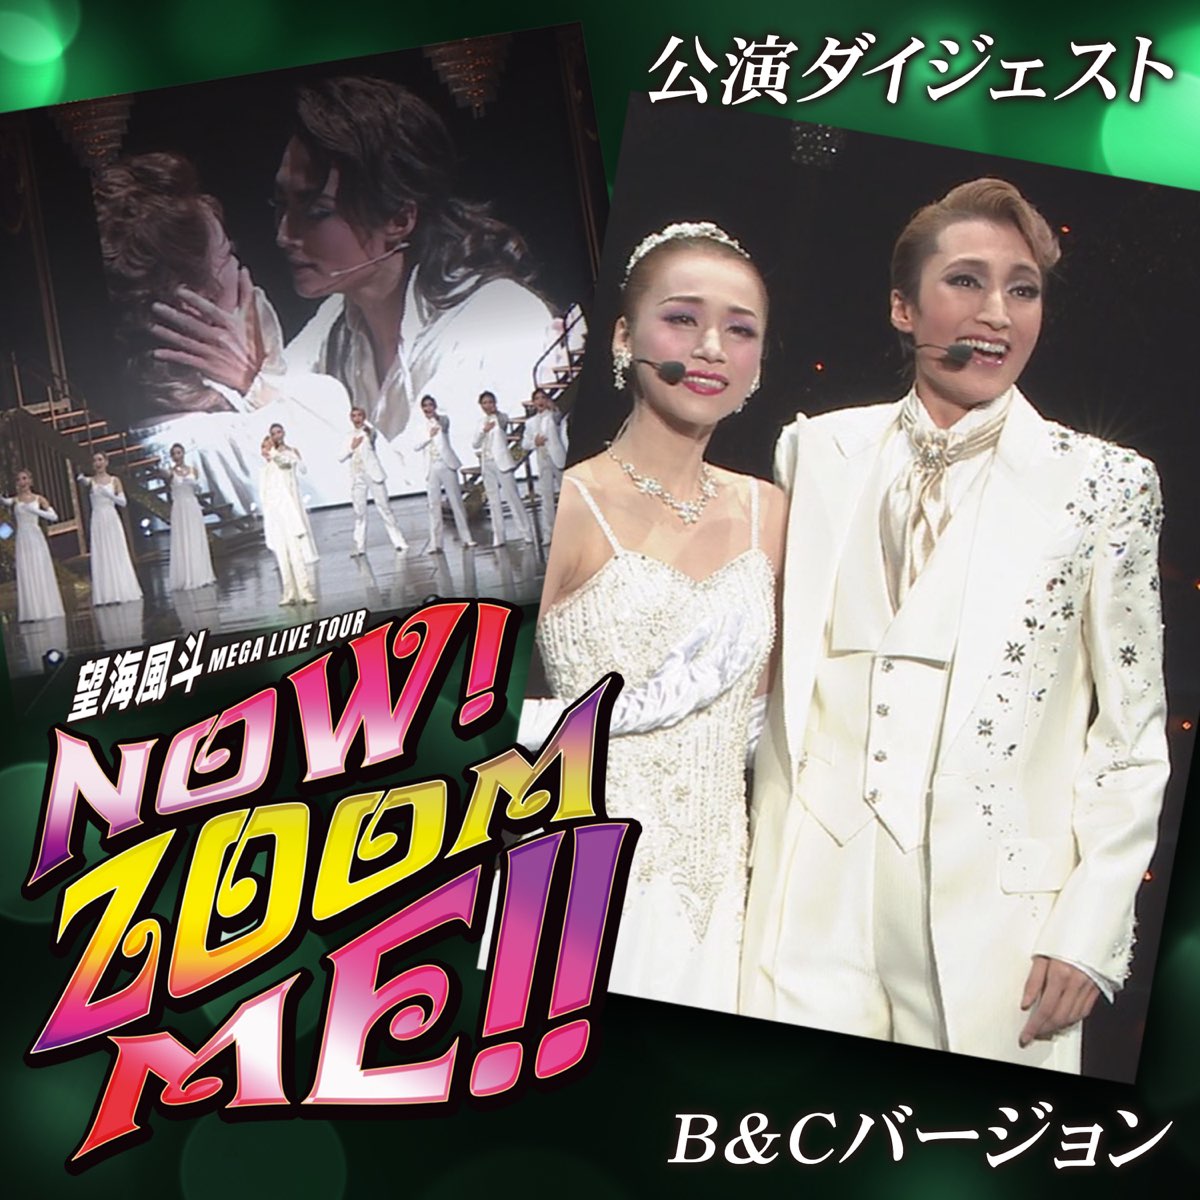 宝塚 雪組 NOW! ZOOM ME!!Blu-ray - 舞台/ミュージカル